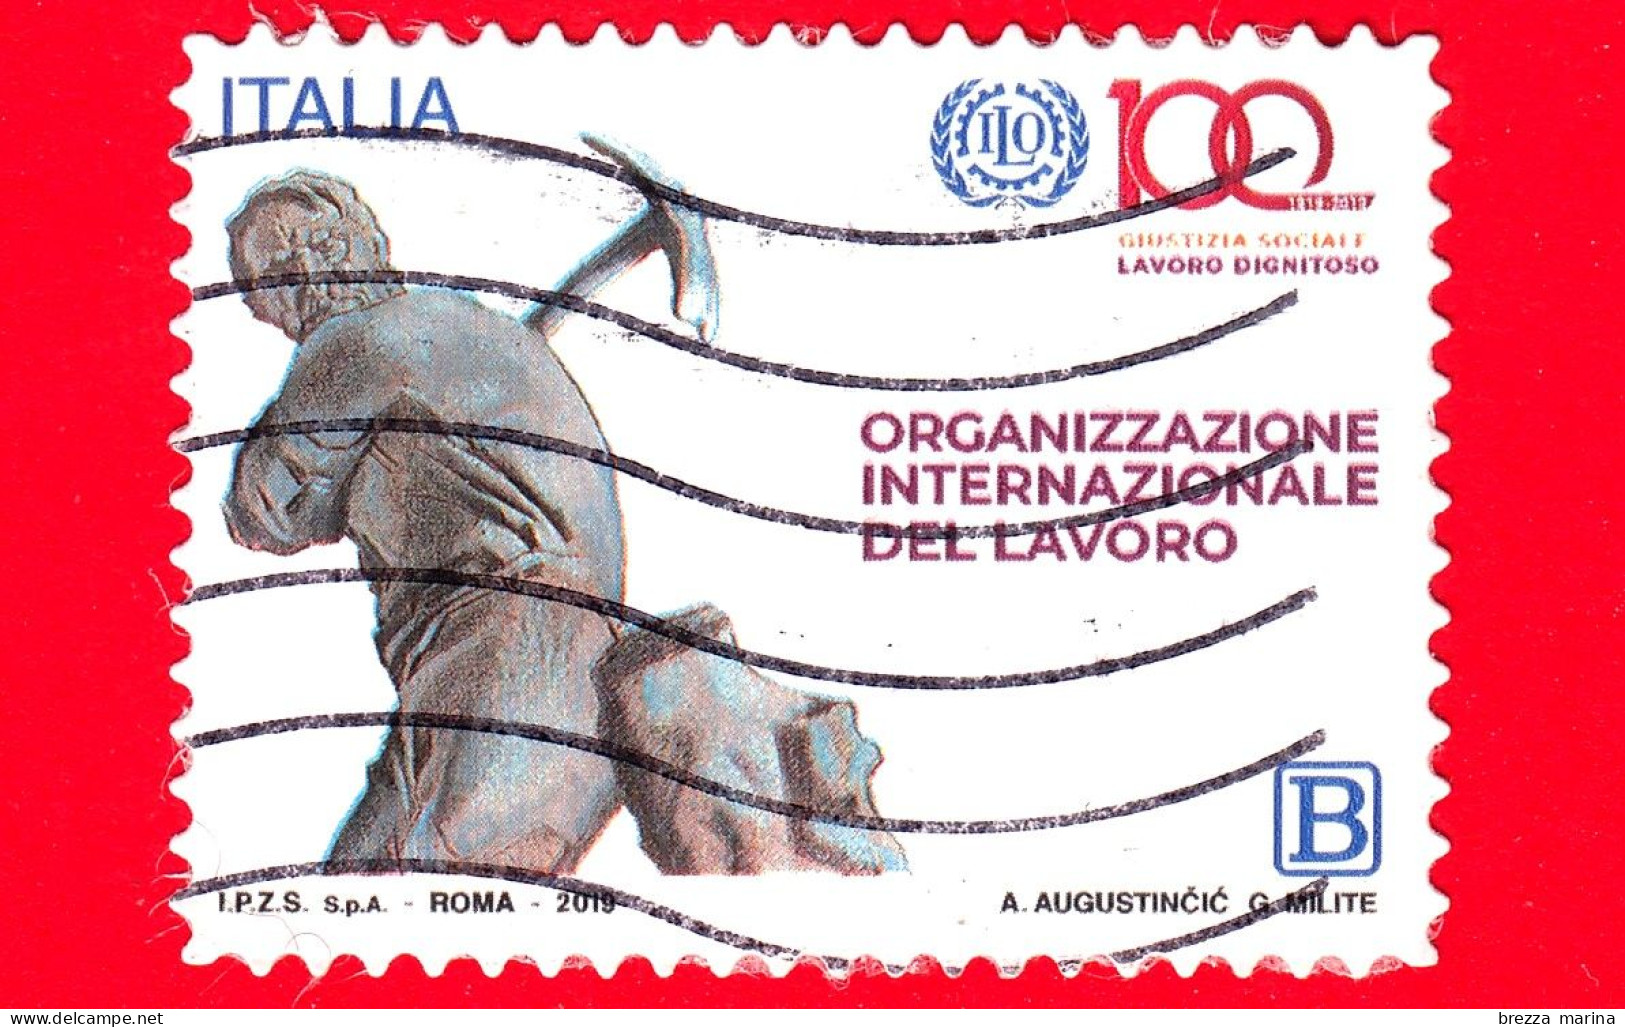 ITALIA - Usato - 2019 - 100 Anni Dell’Organizzazione Internazionale Del Lavoro – OIL - Minatore - B - 2011-20: Usados